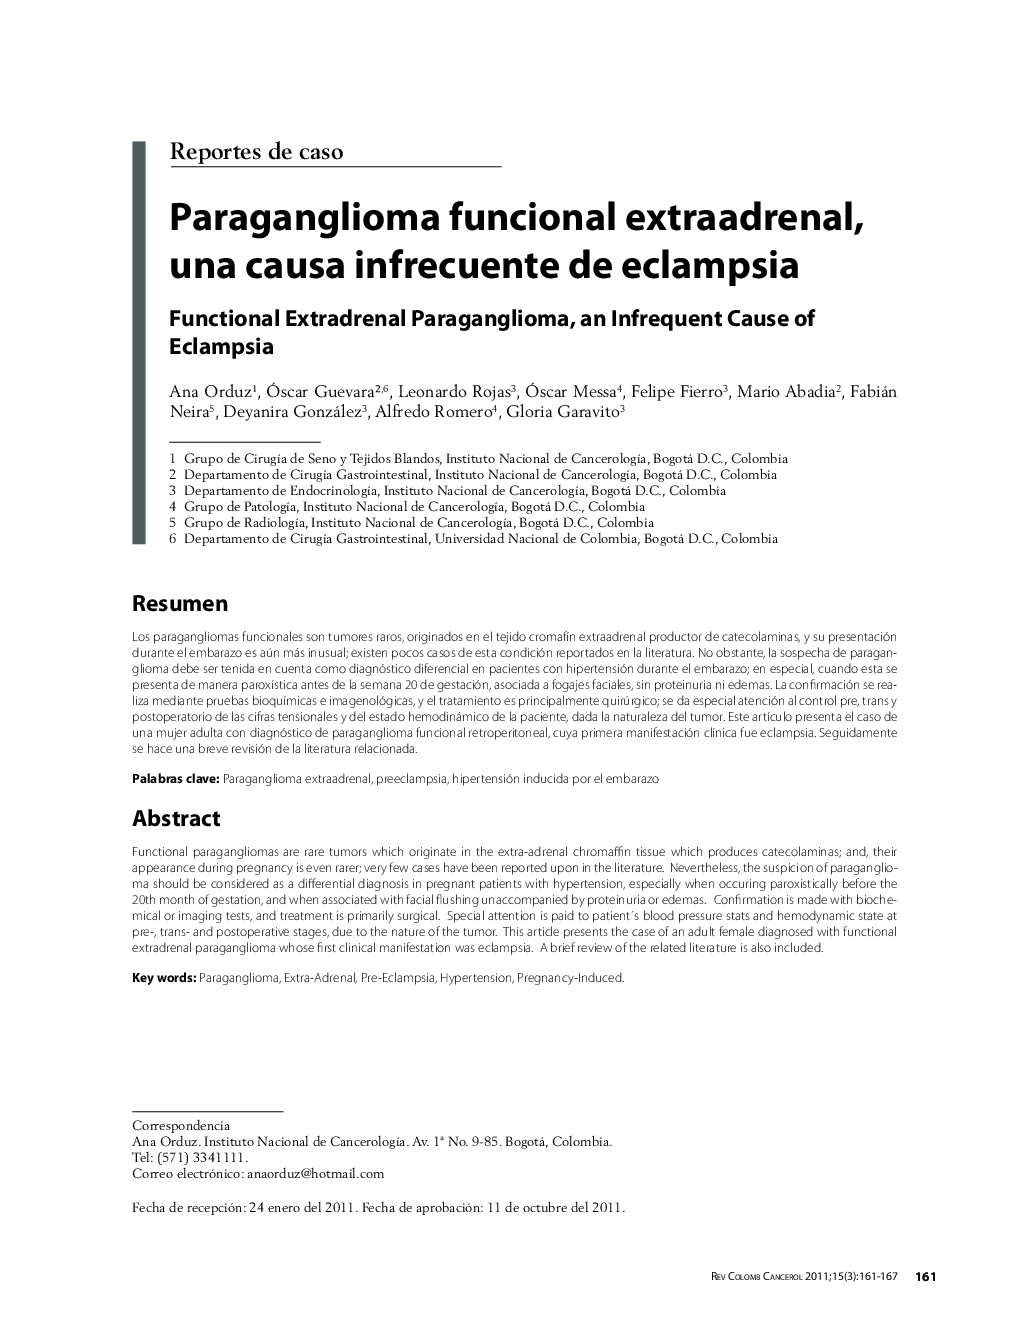 Paraganglioma funcional extraadrenal, una causa infrecuente de eclampsiaFunctional Extradrenal Paraganglioma, an Infrequent Cause of Eclampsia